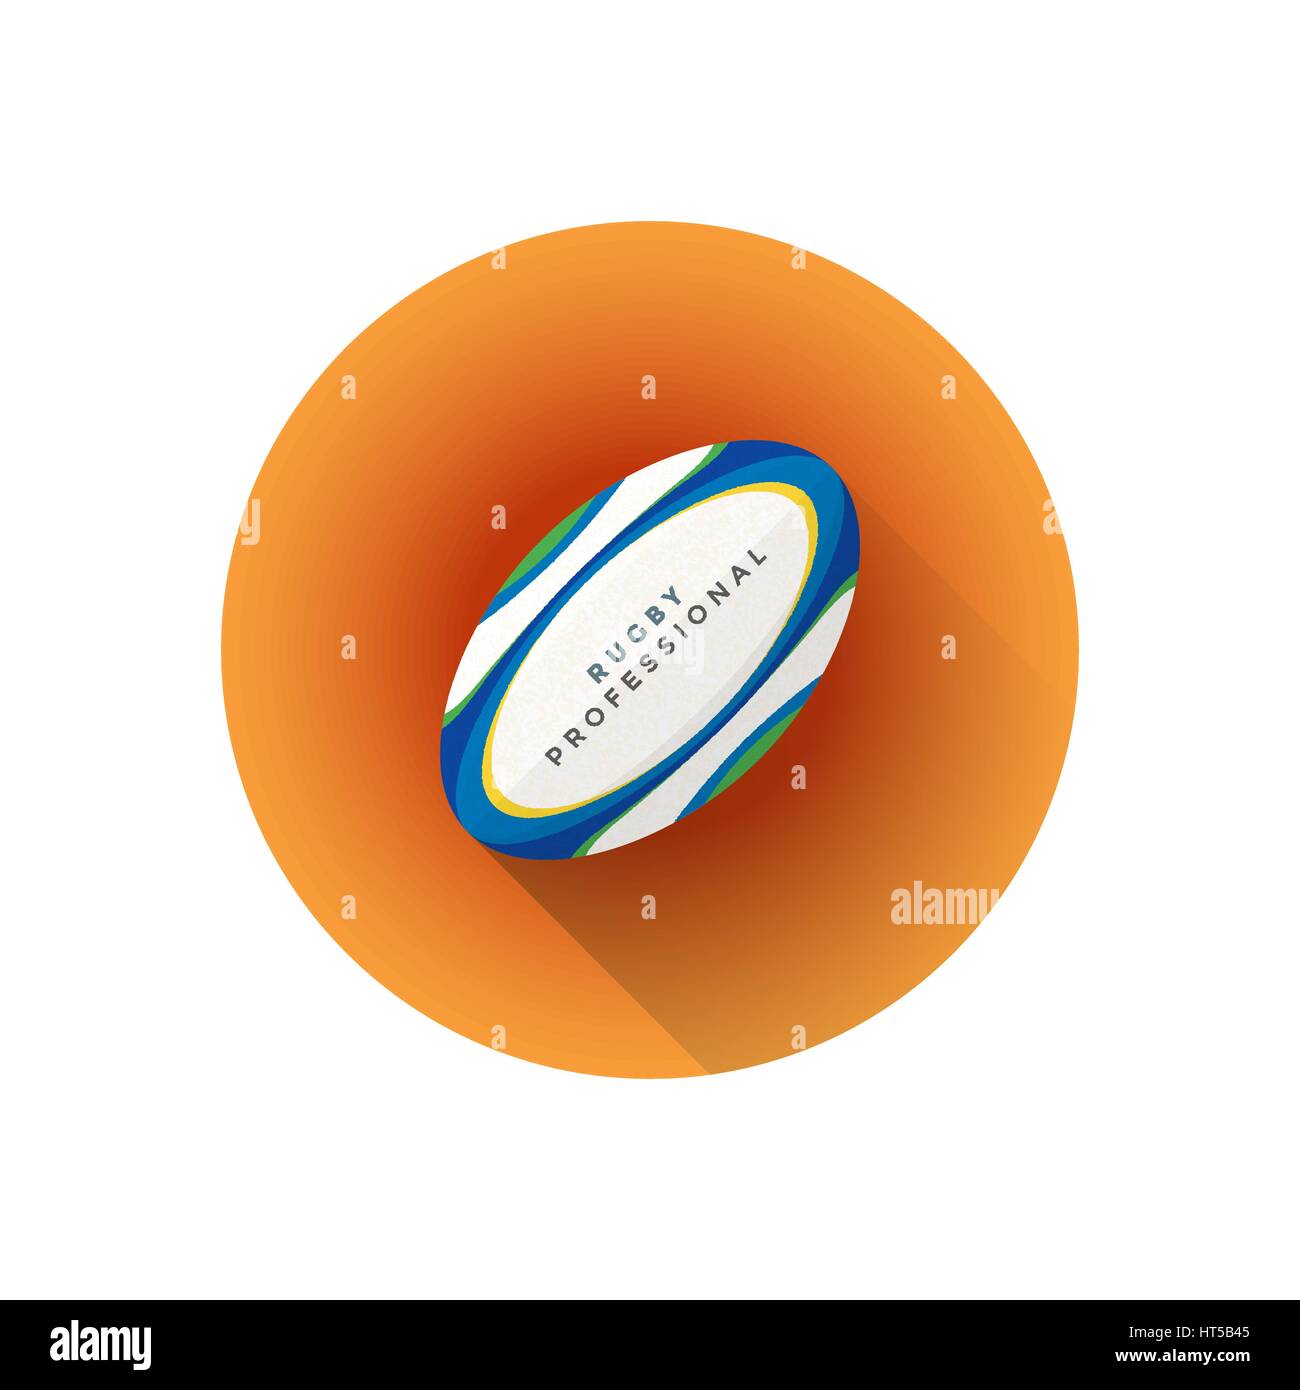 Vektor bunte flache Design professionelle Rugby-Ball isolierte Abbildung braunen Hintergrund Kreissymbol mit langen Schatten Stock Vektor